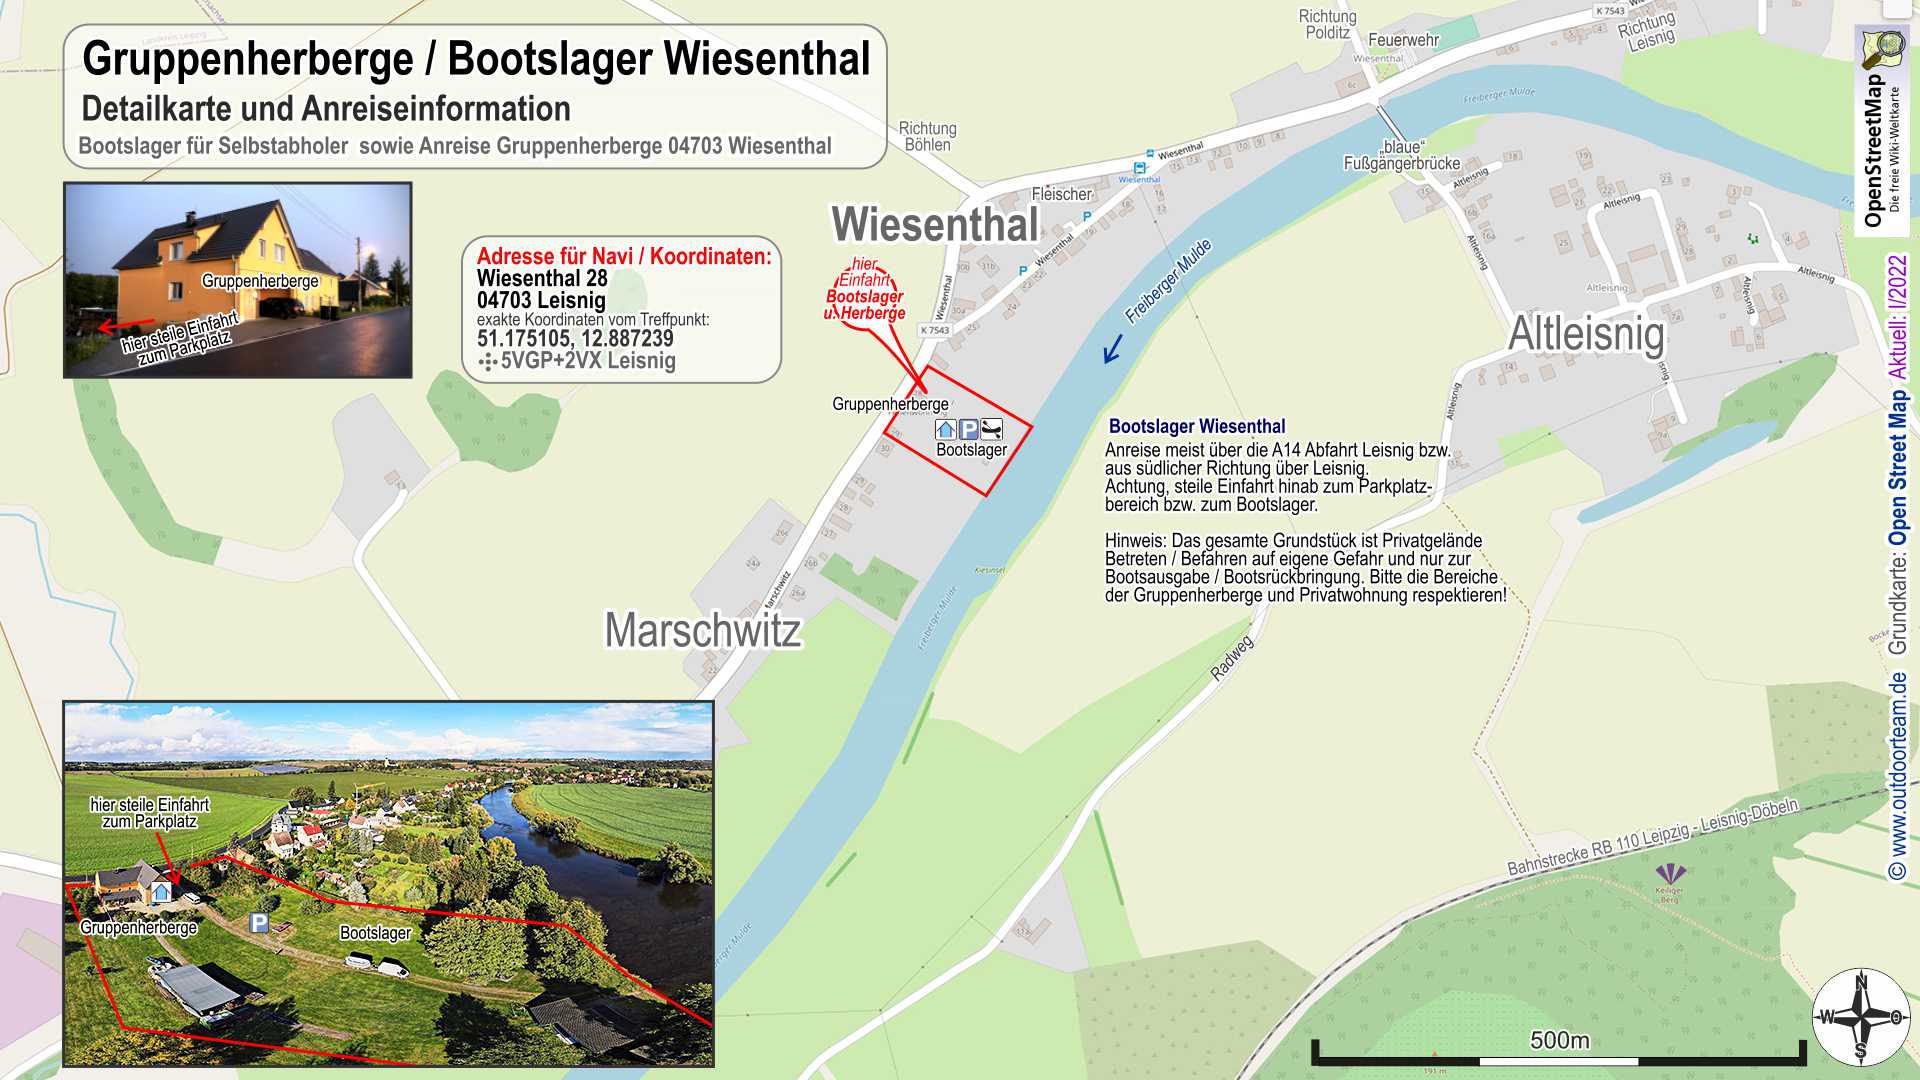 Detailkarte Bootslager und Gruppenherberge in 0403 Wiesenthal am Fluss Freiberger Mulde in Sachsen